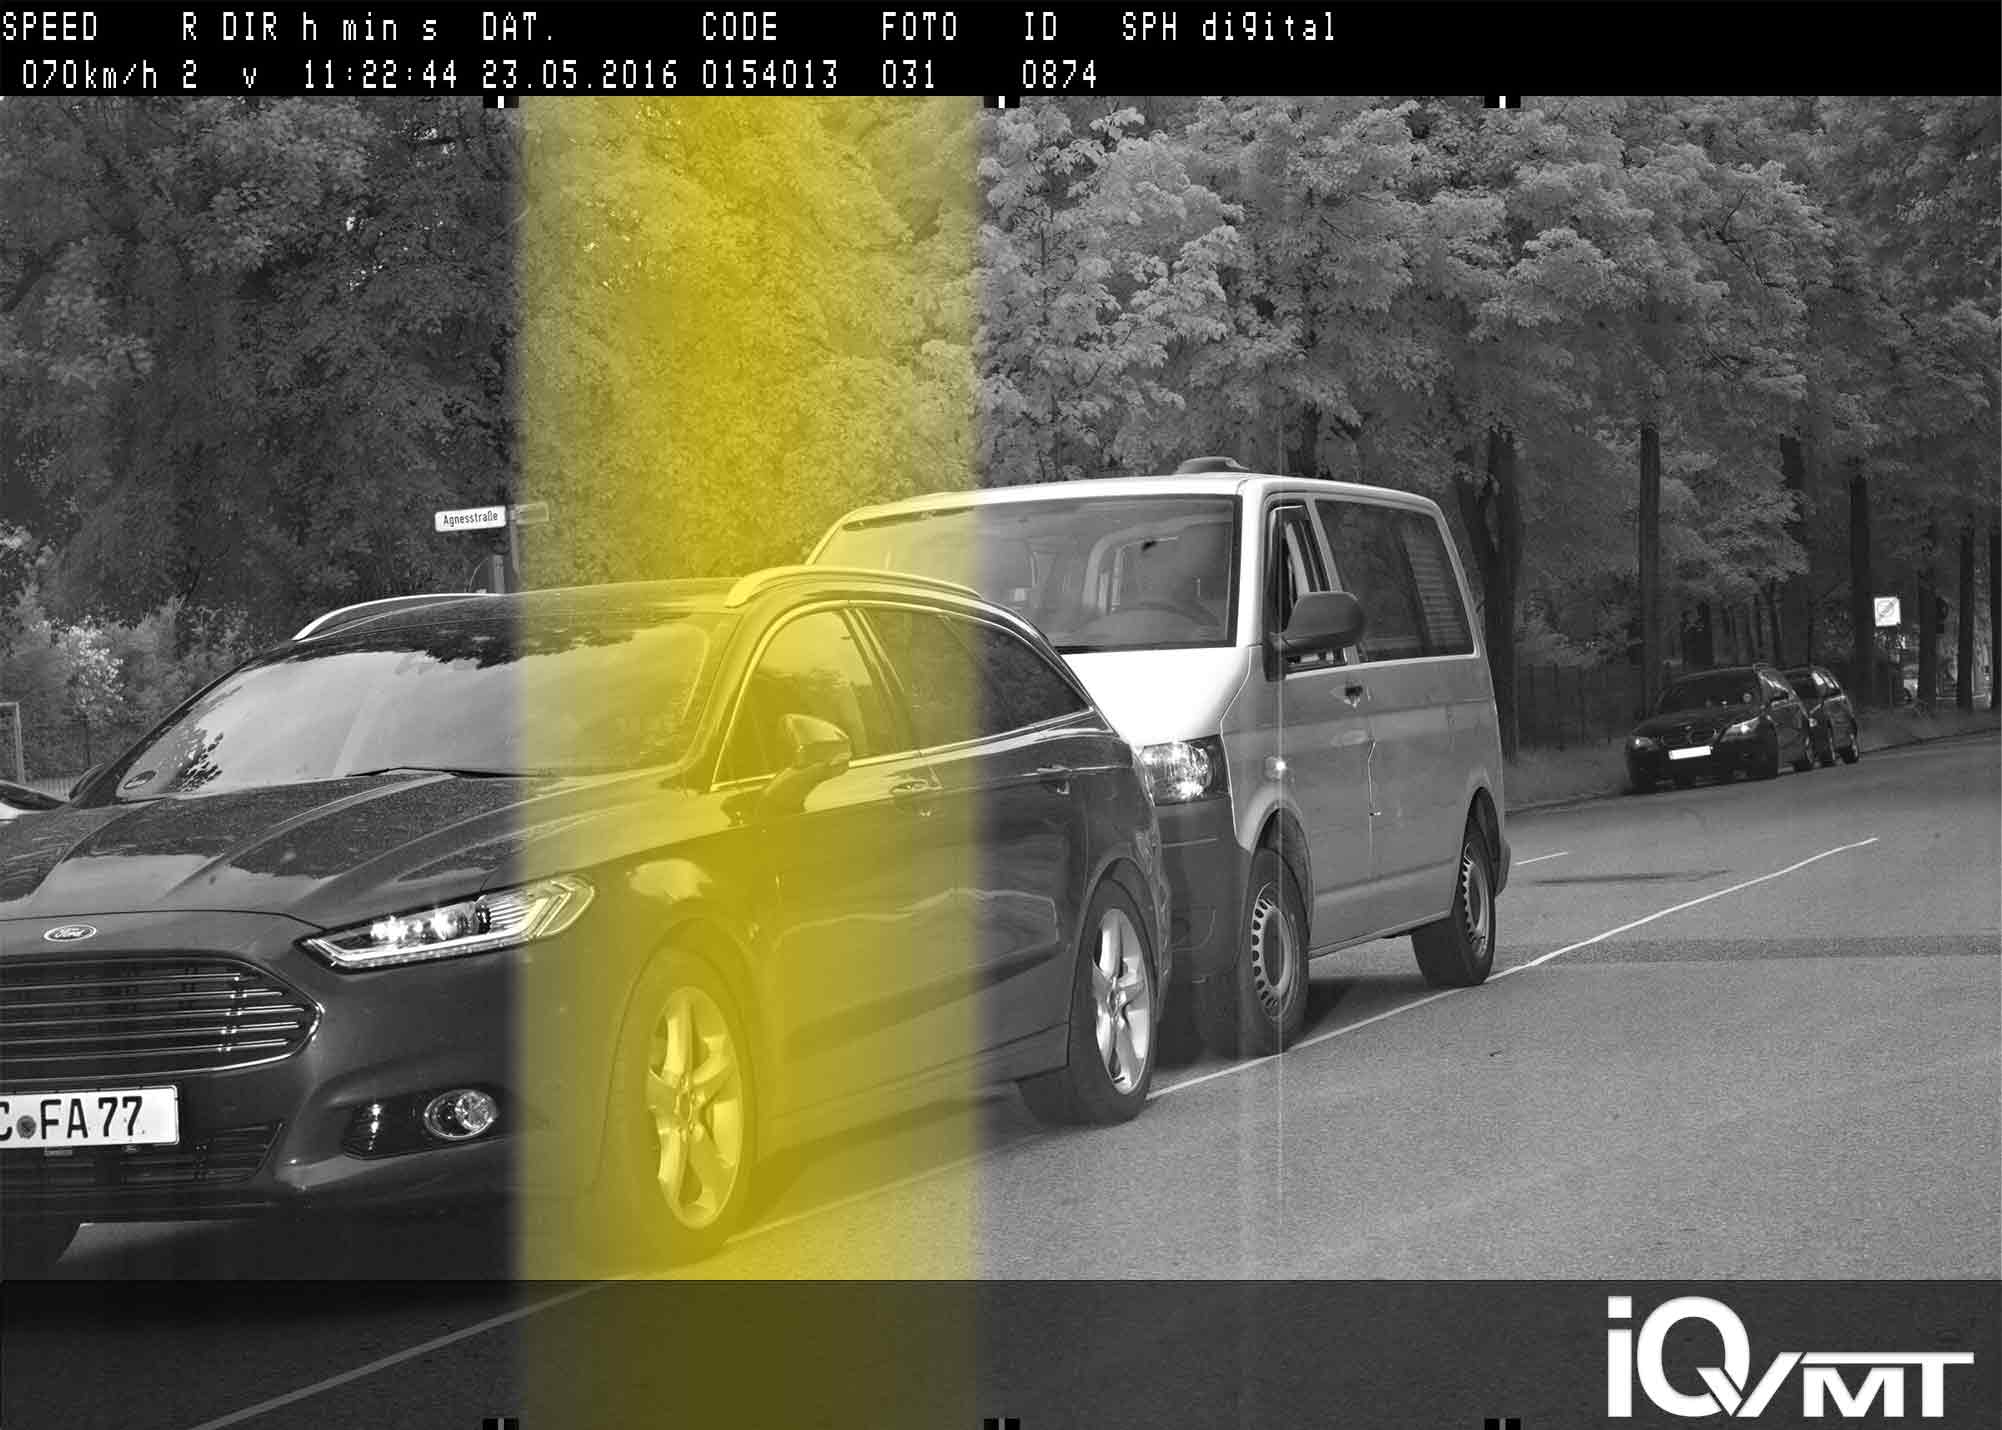 Versuch zur Reflexionsfehlmessung mit Traffipax speedophot mit zwei Fahrzeugen als Barriere iQvmt